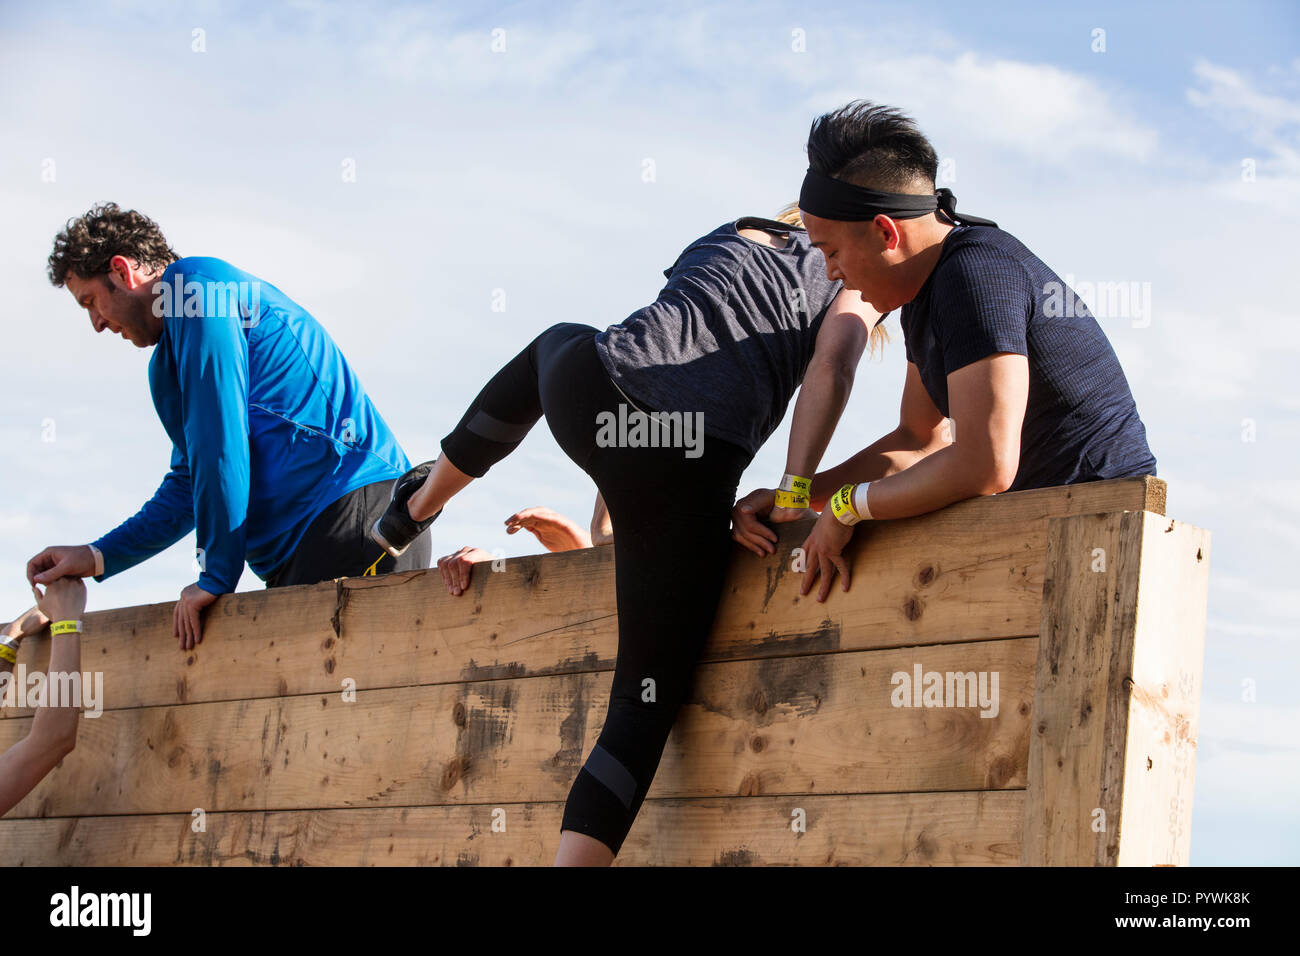 Londres, Reino Unido - 13 de setiembre de 2018: Los participantes toman parte en una dura carrera de obstáculos 5K Mudder en Londres. Foto de stock